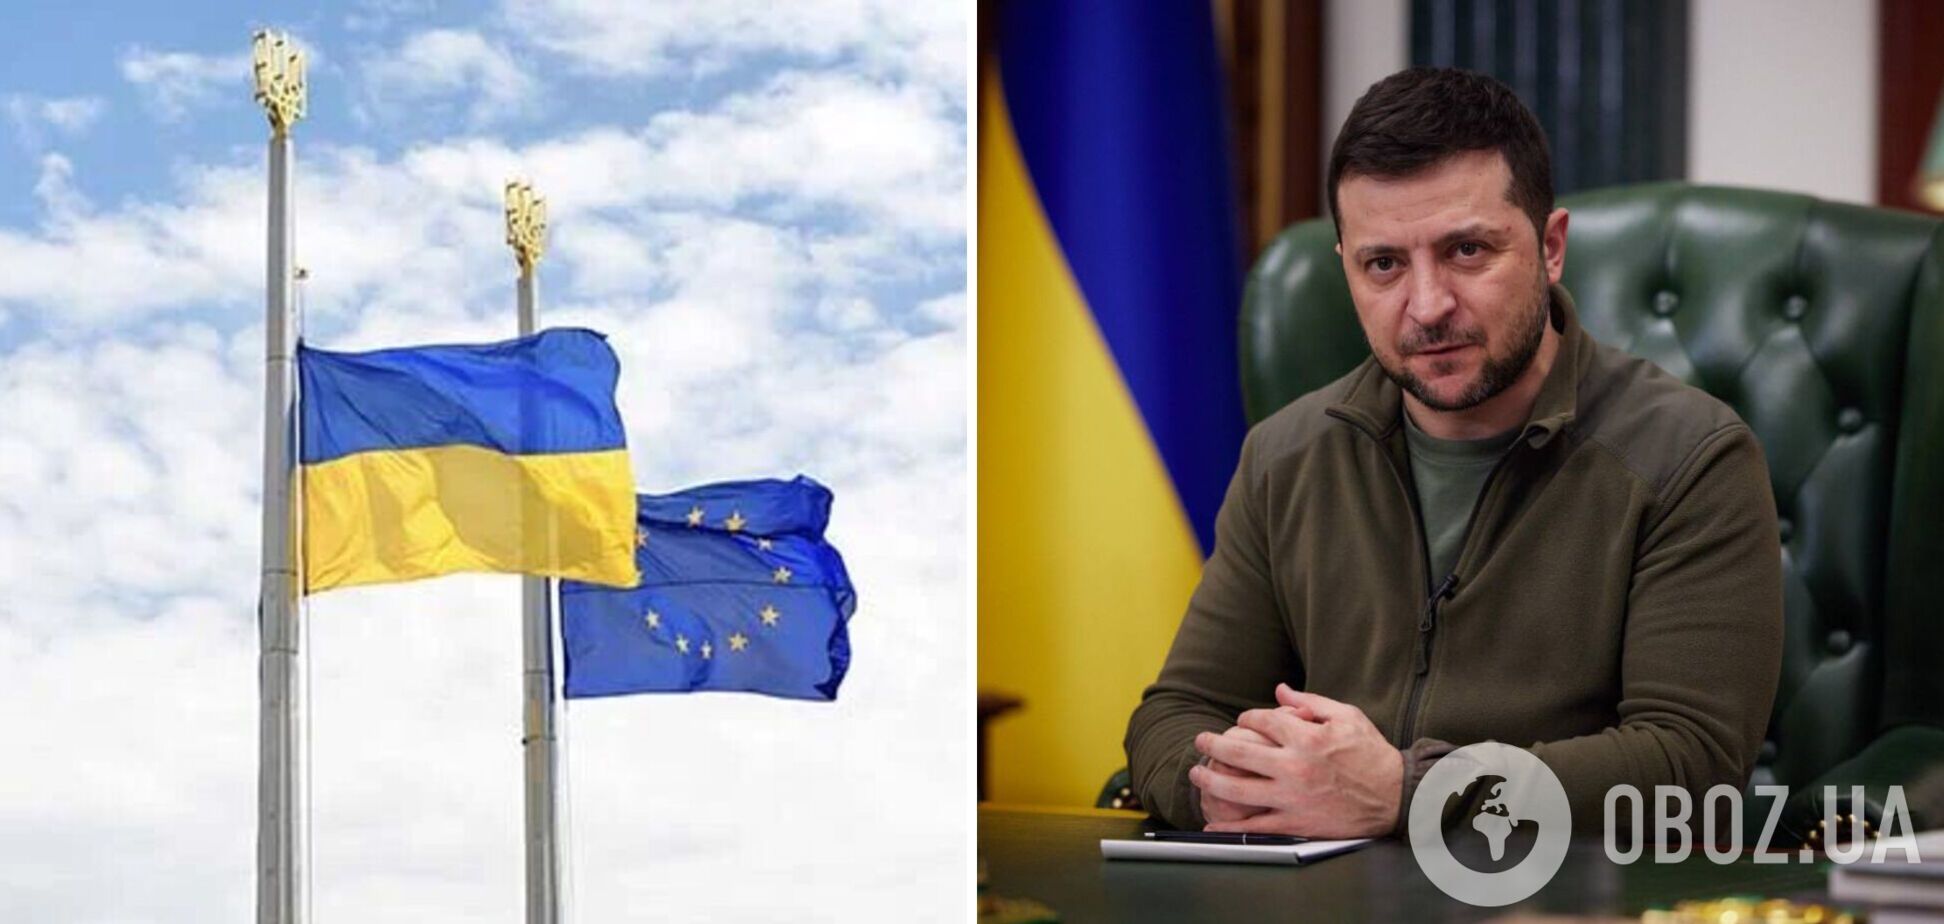 Ожидаем новости и положительные решения: Зеленский анонсировал новые реформы накануне саммита Украина – ЕС